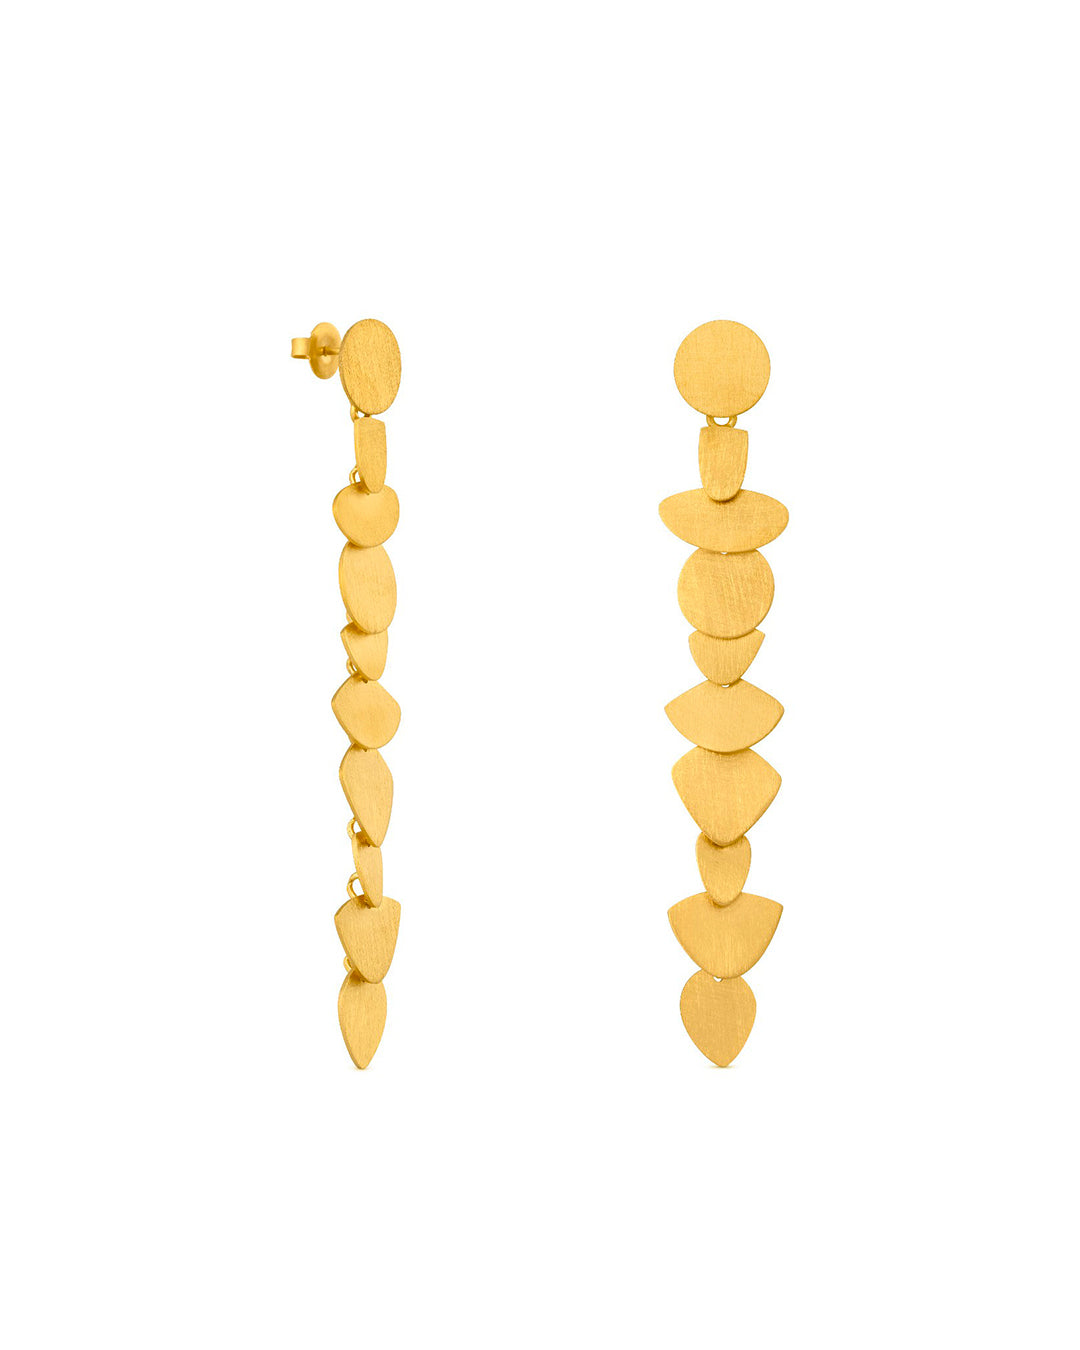 Handmade golden earrings - Joidart